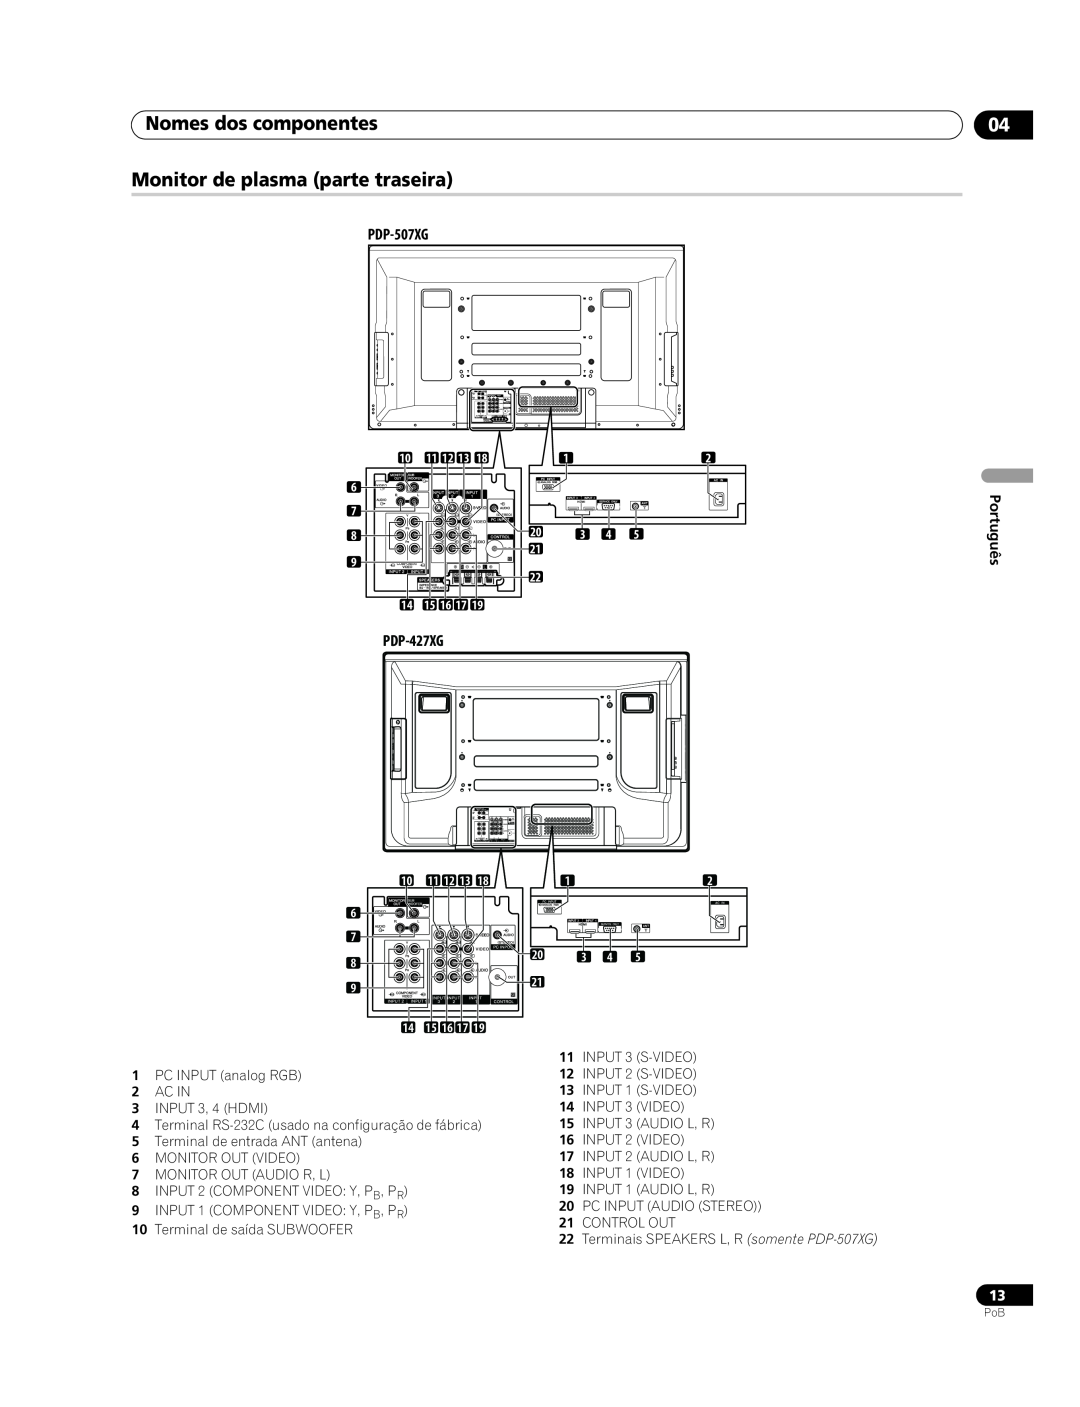 Pioneer PDP-507XG manual Nomes dos componentes Monitor de plasma parte traseira, PDP-427XG, Português 